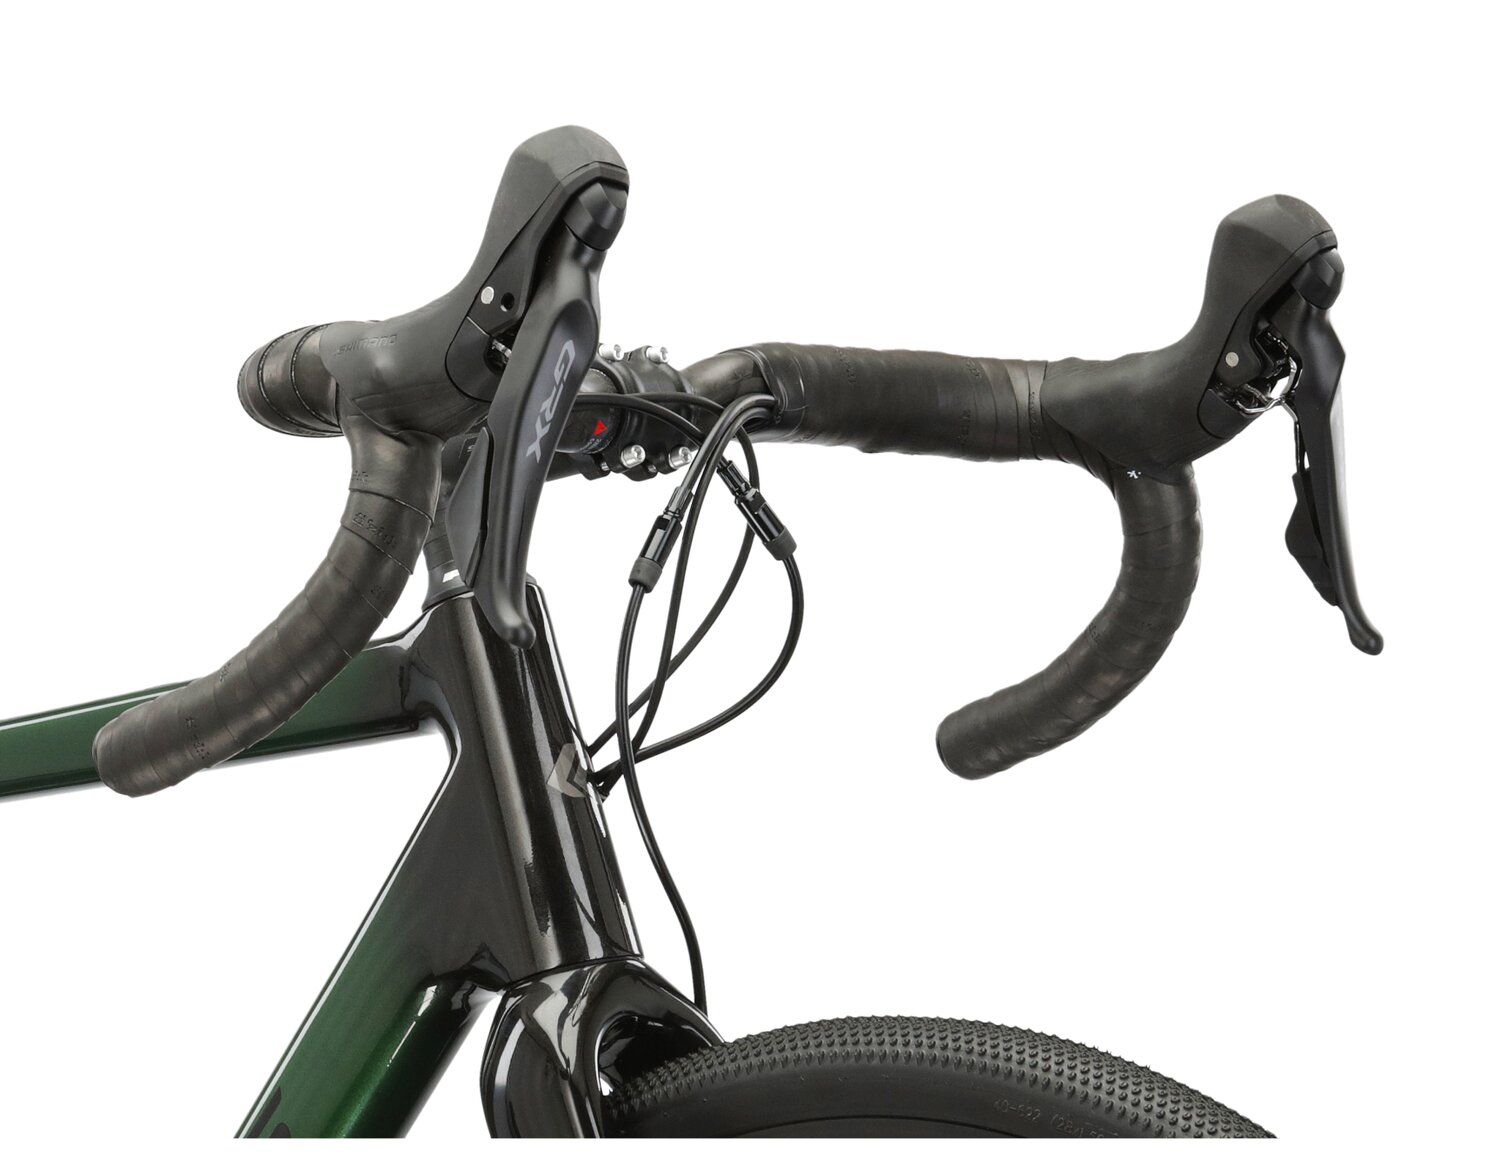  Carbonowa rama, carbonowa kierownica FSA K-WING AGX oraz manetki SHIMANO GRX RX600 w rowerze gravelowym Kross Esker 8.0 